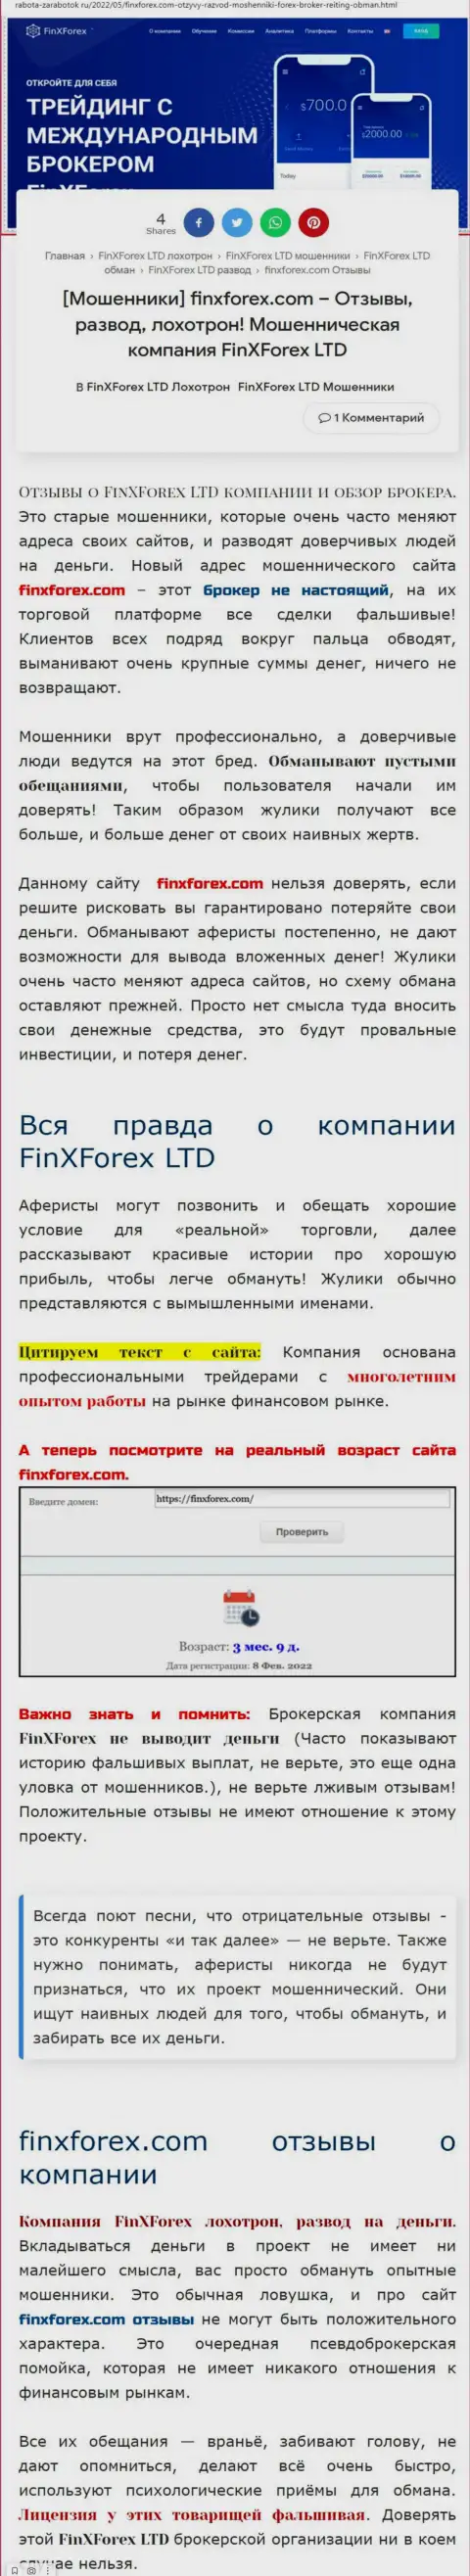 Автор обзорной статьи о FinXForex заявляет, что в FinXForex Com мошенничают